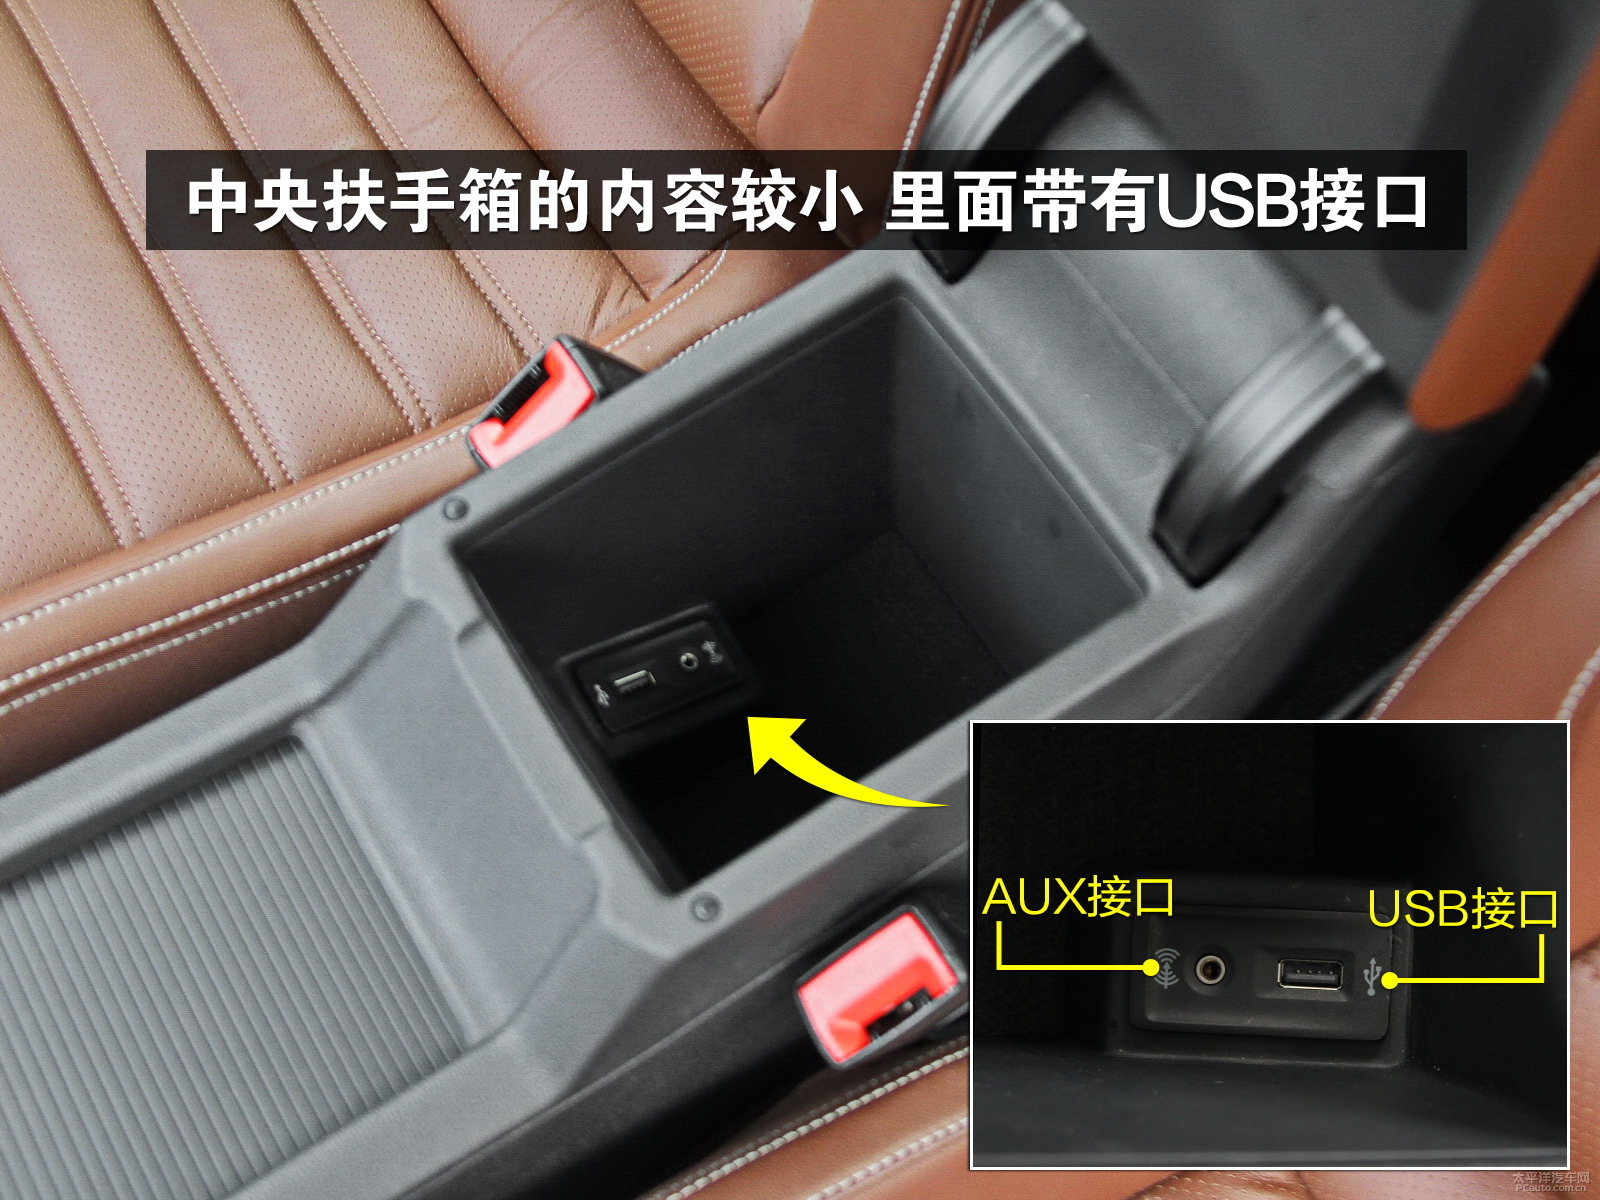 中央扶手箱内部带有usb和aux接口,但储物能力一般.